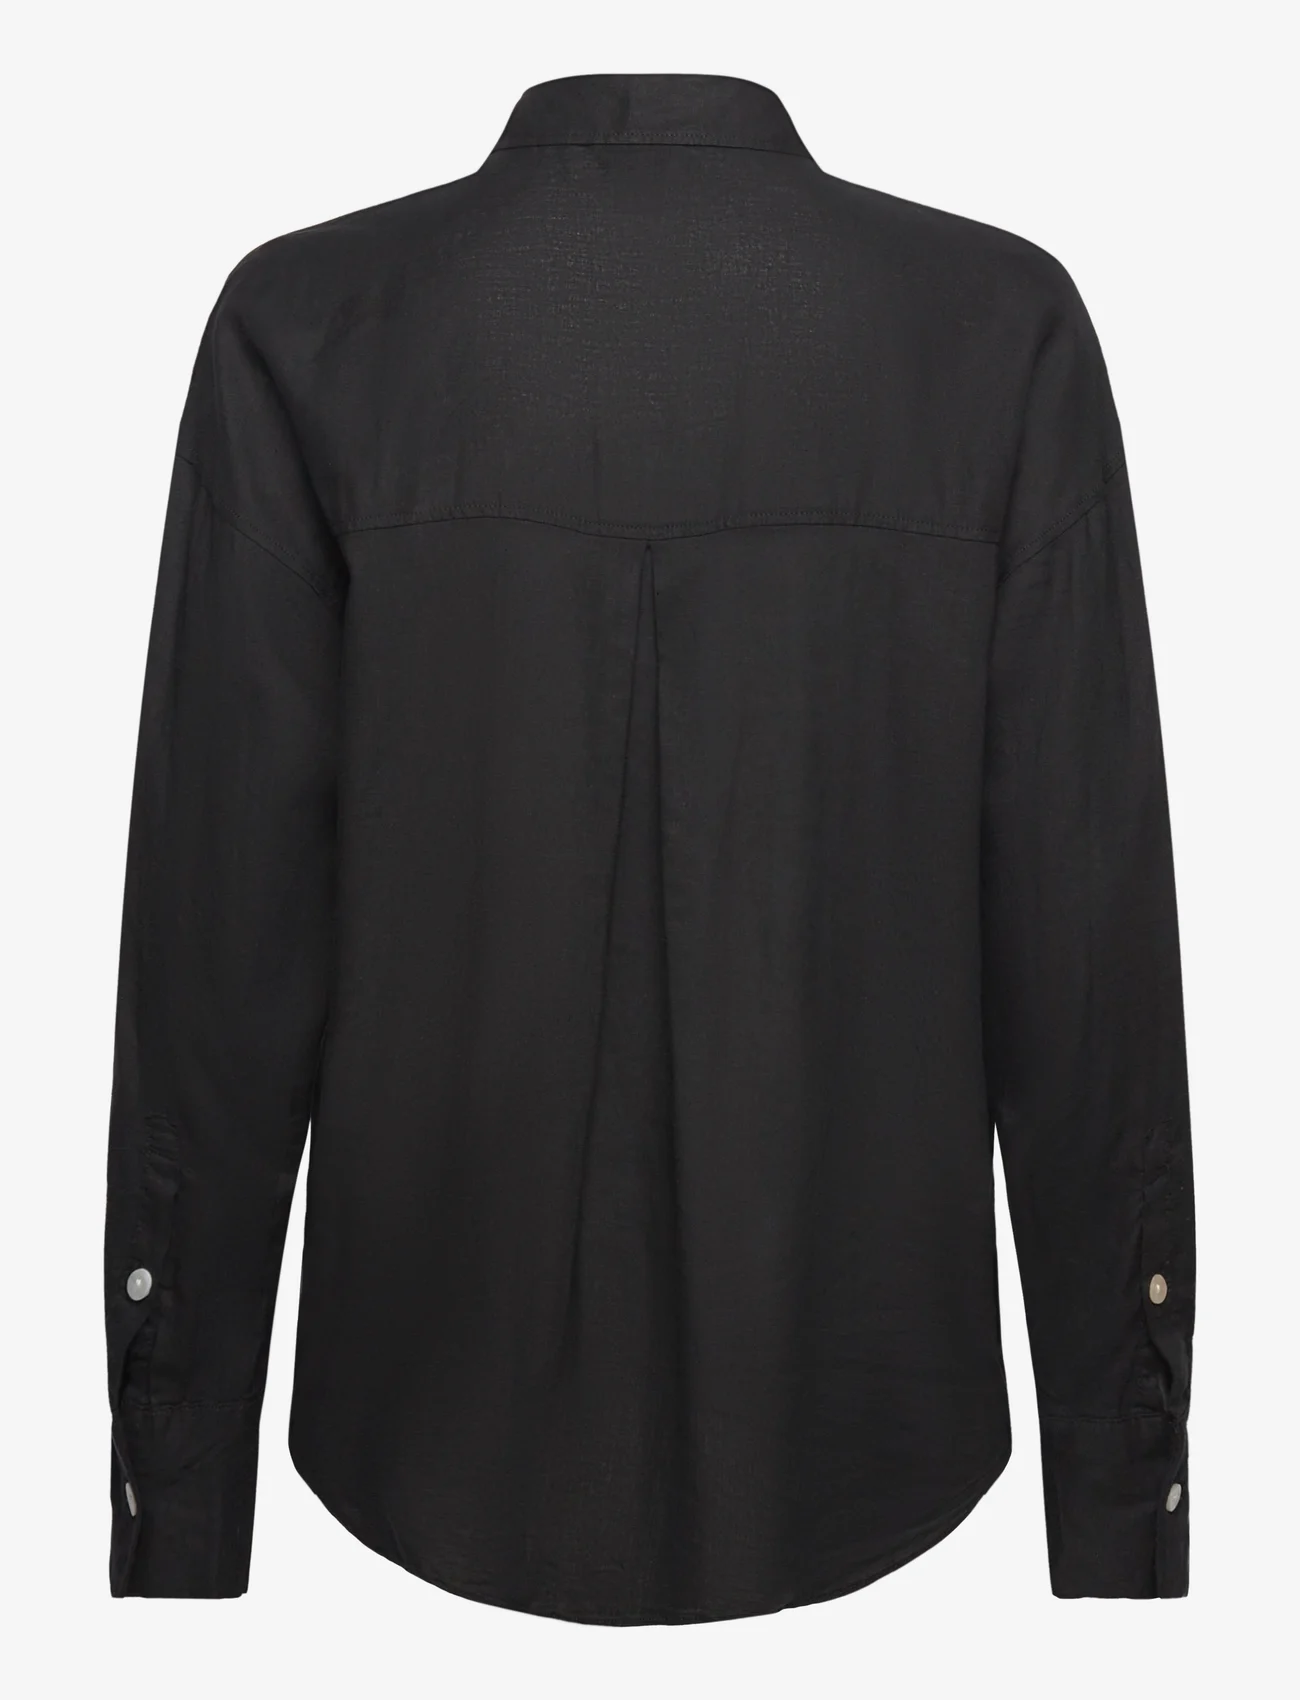 Lindex - Shirt Magda Linen blend - linnen overhemden - black - 1